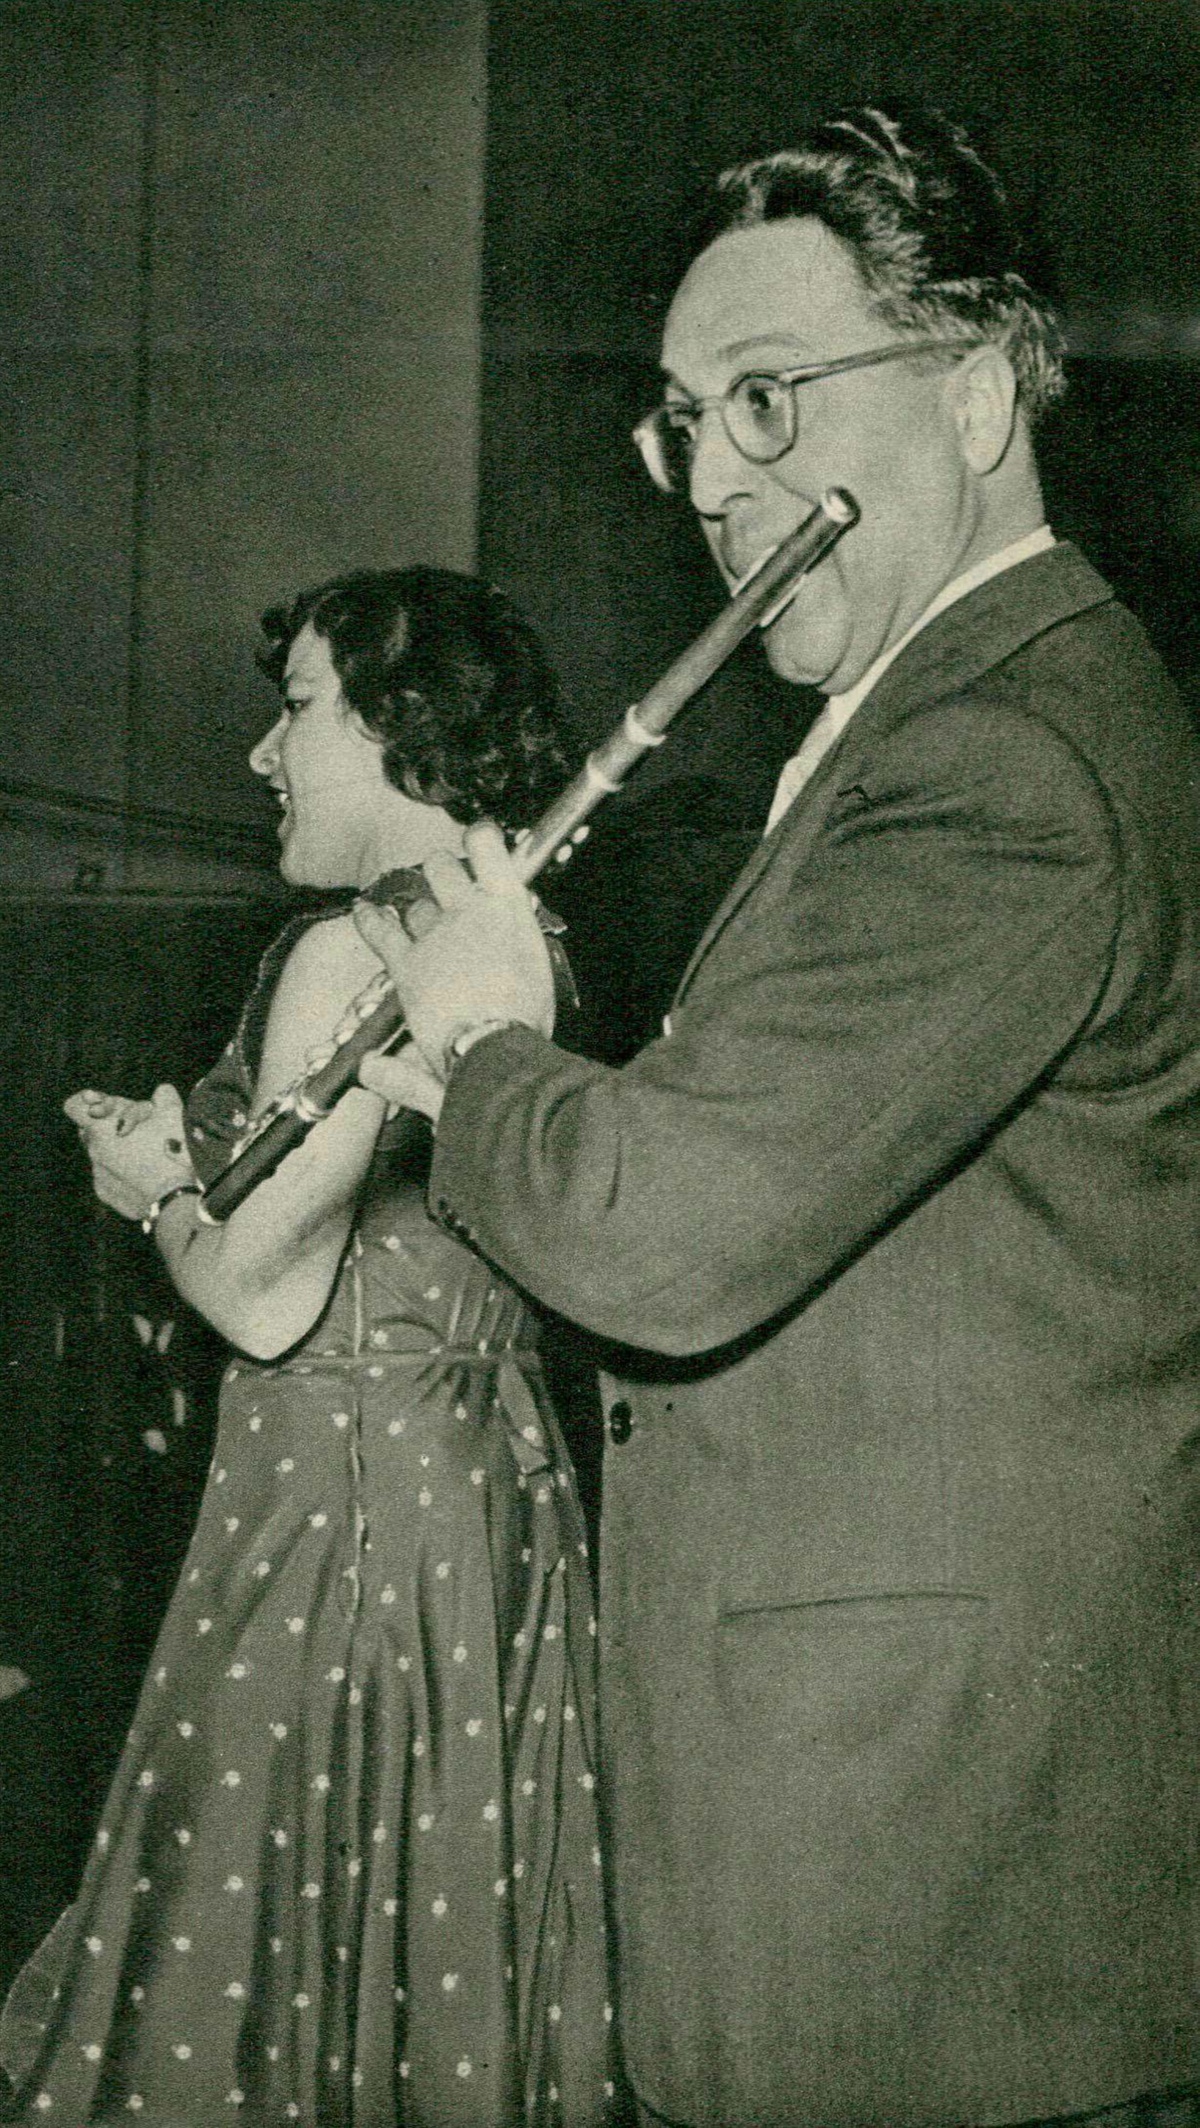 André PÉPIN accompagnant Magda FONAY, Grand Studio de Radio-Genève, 25 juin 1949, une photo publiée dans la revue Radio Actualités du 1er juillet 1949, No 26, en page 955, cliquer pour une vue agrandie